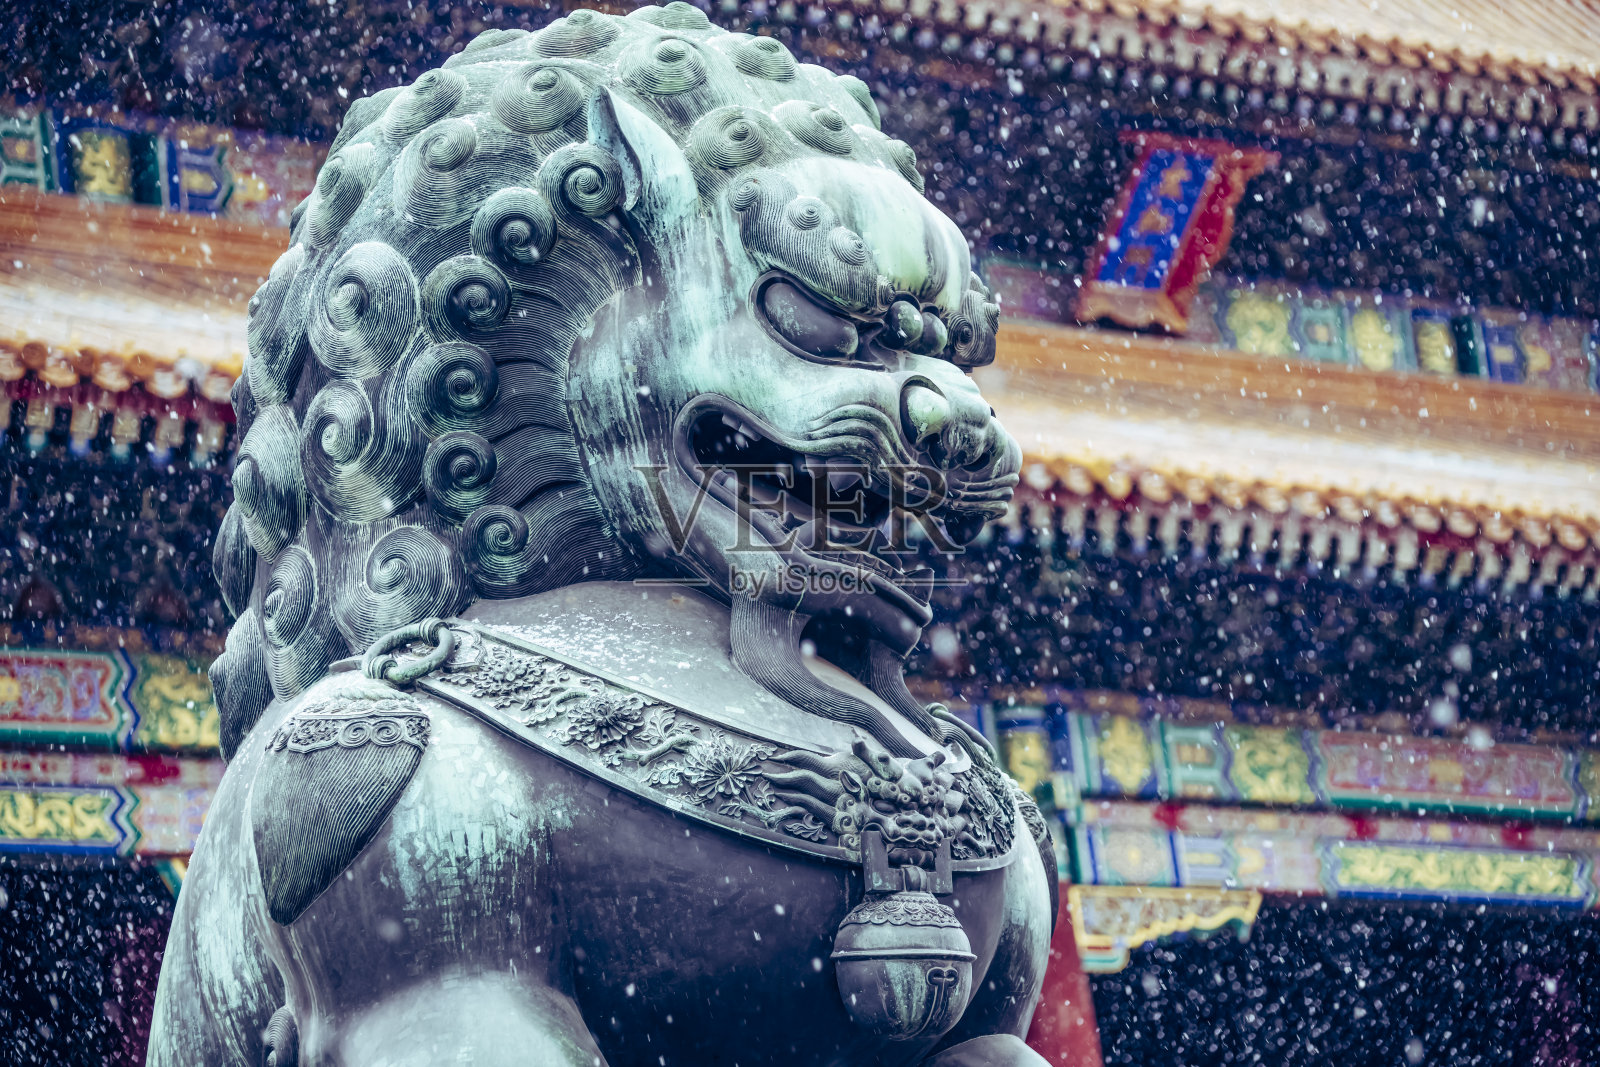 雪中的紫禁城——中国北京照片摄影图片